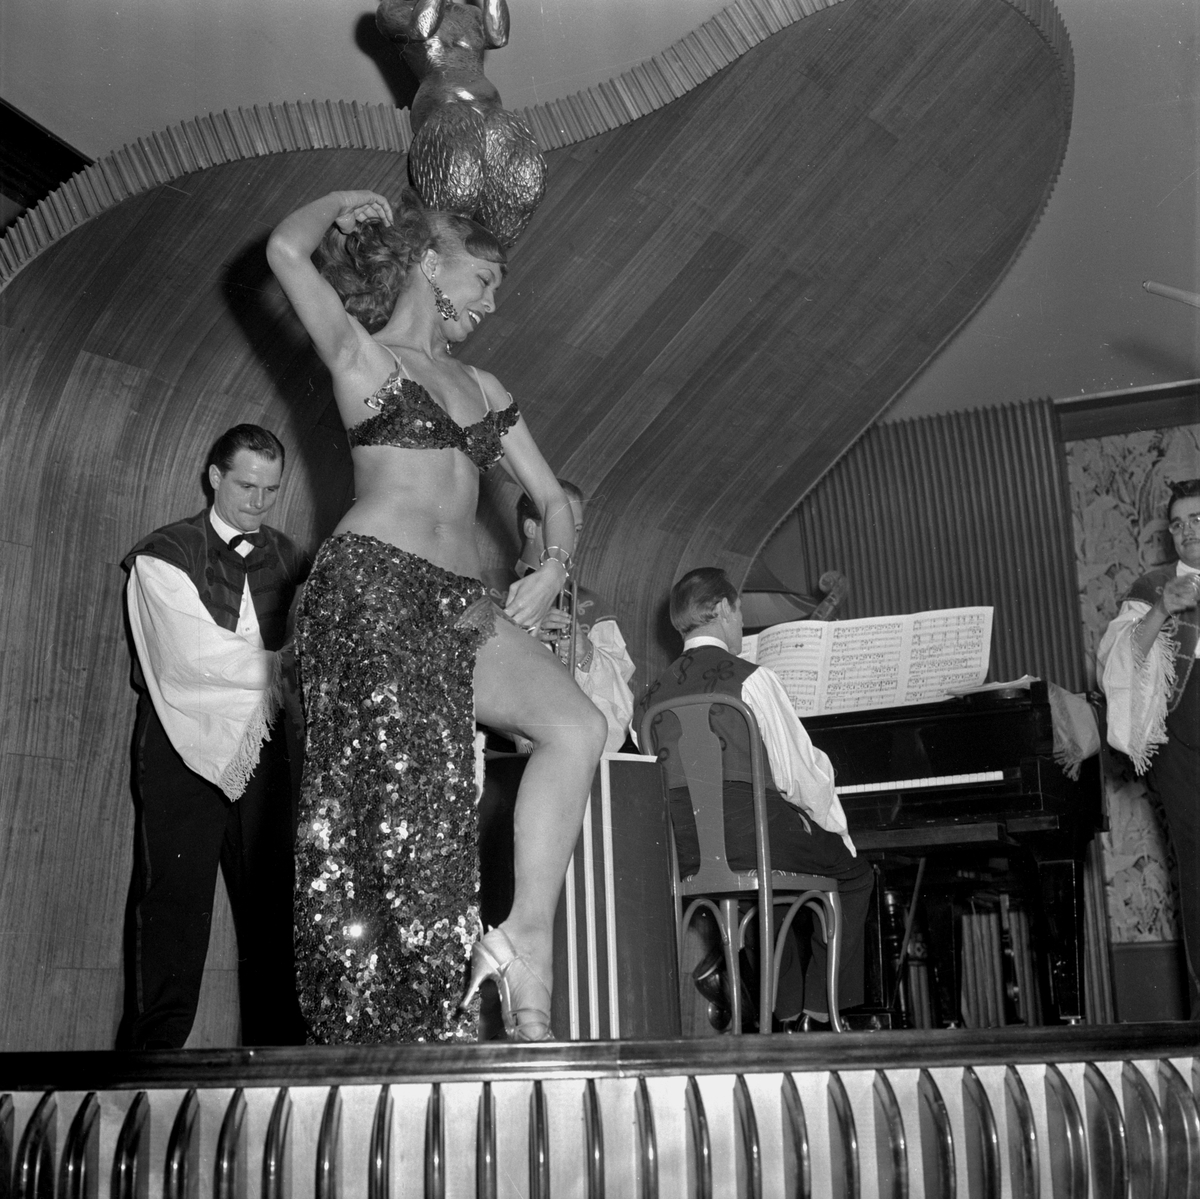 La Bommie dansösen på Frimis.
April 1956.